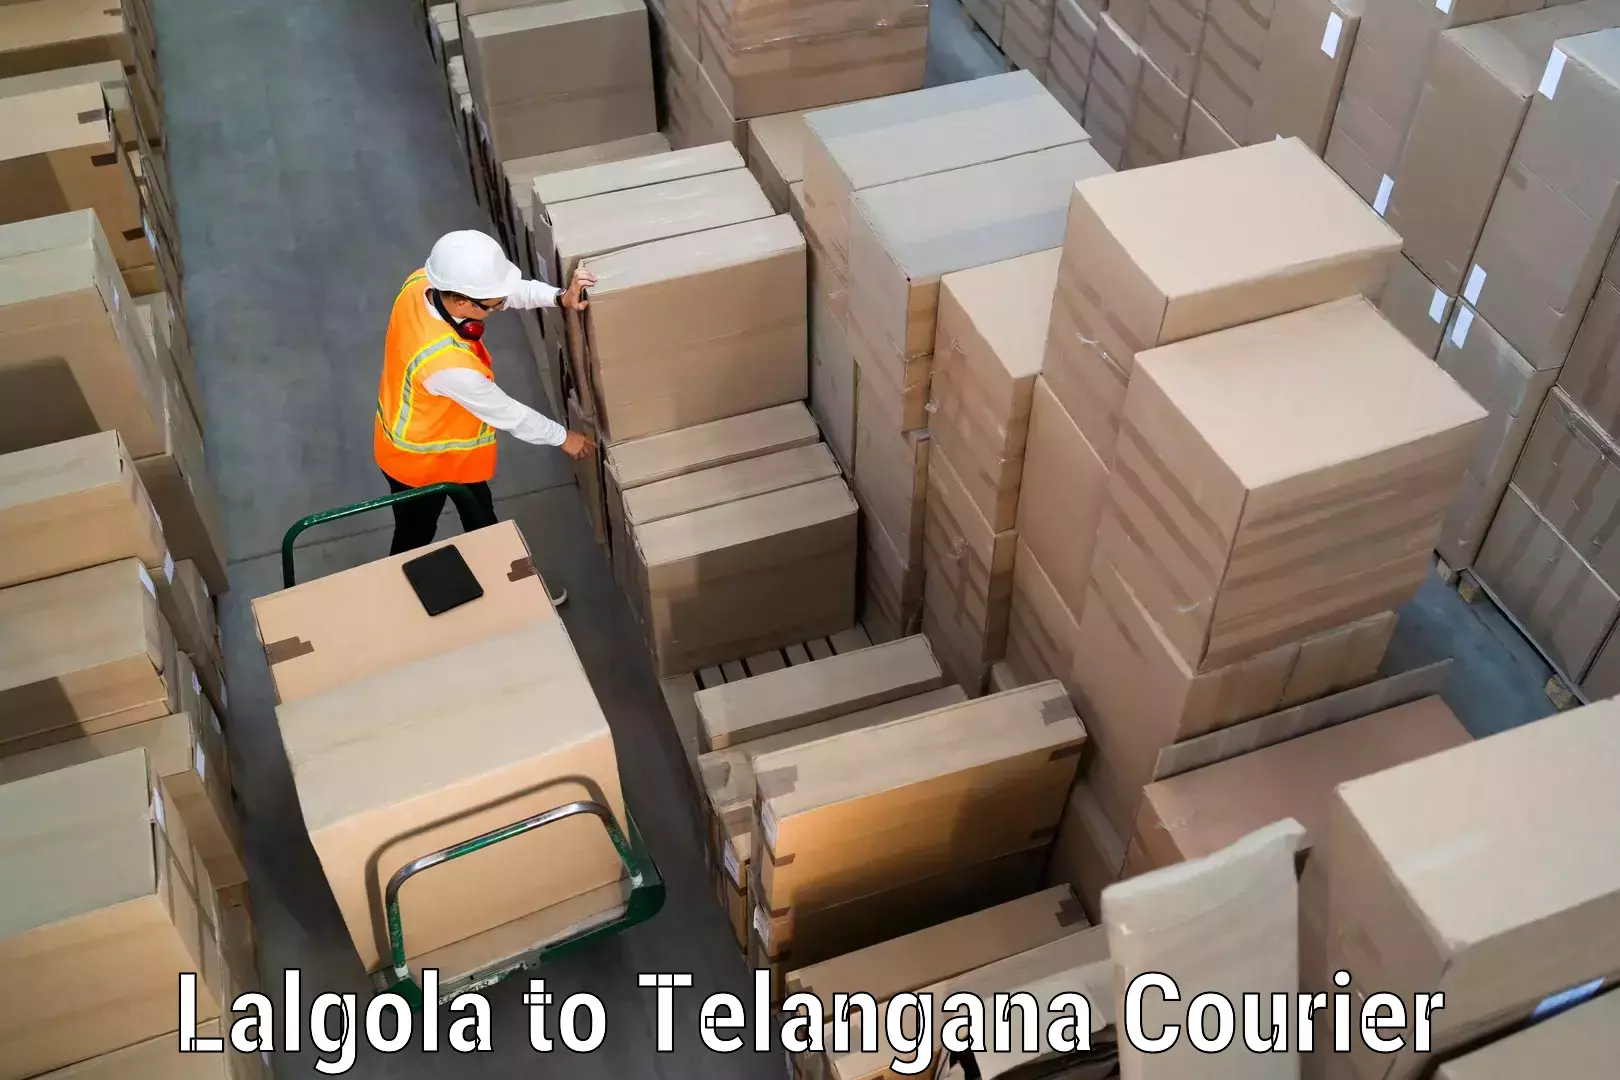 Efficient order fulfillment Lalgola to Telangana